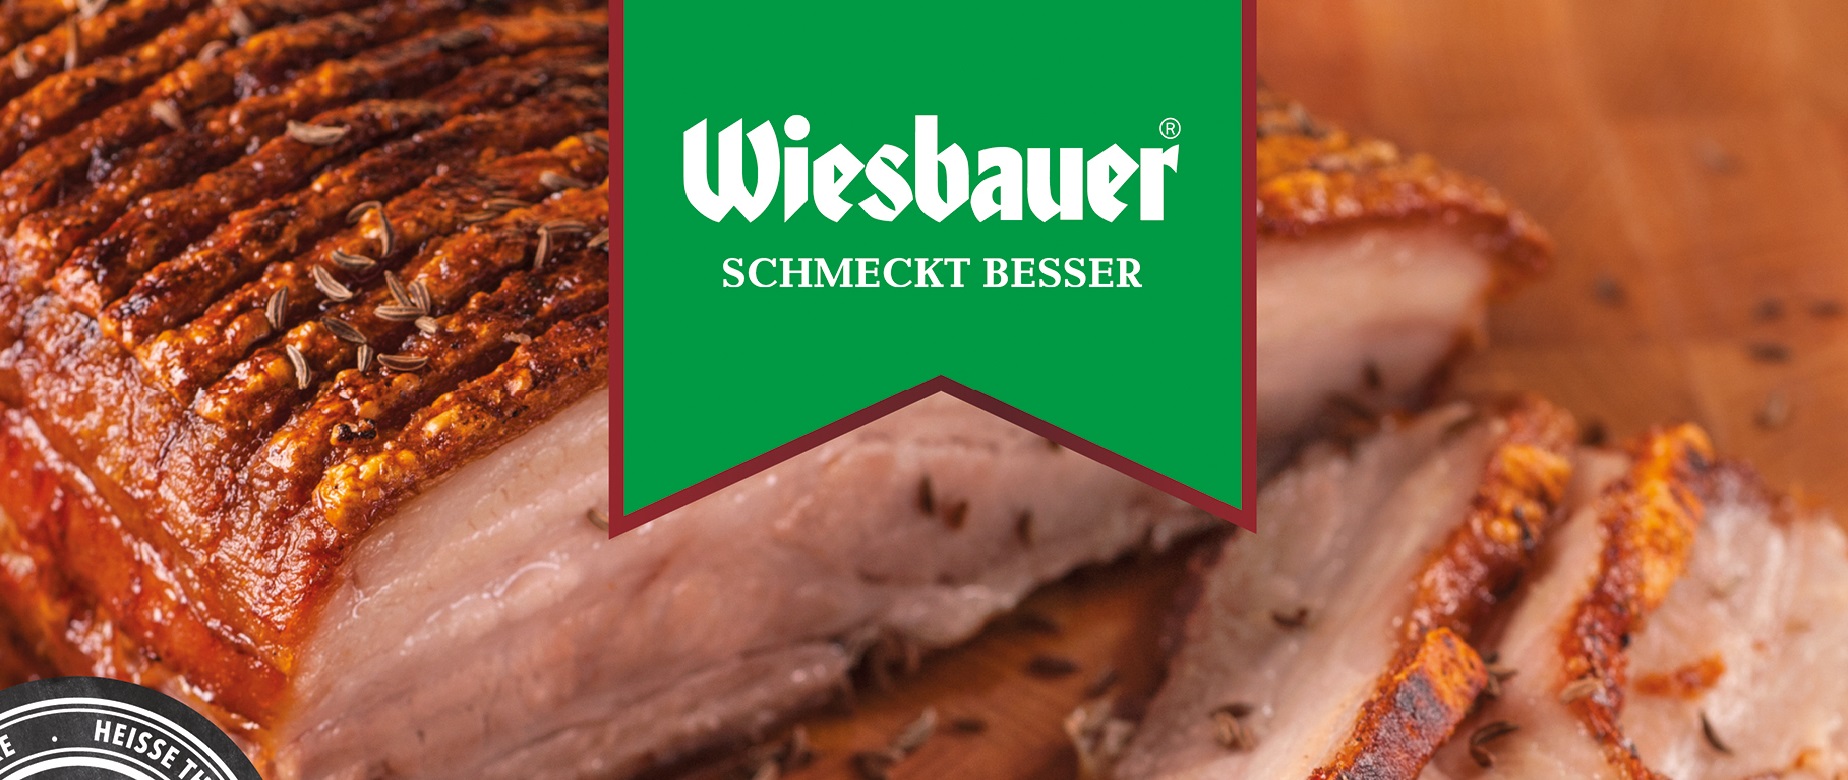 (c) Wiesbauer